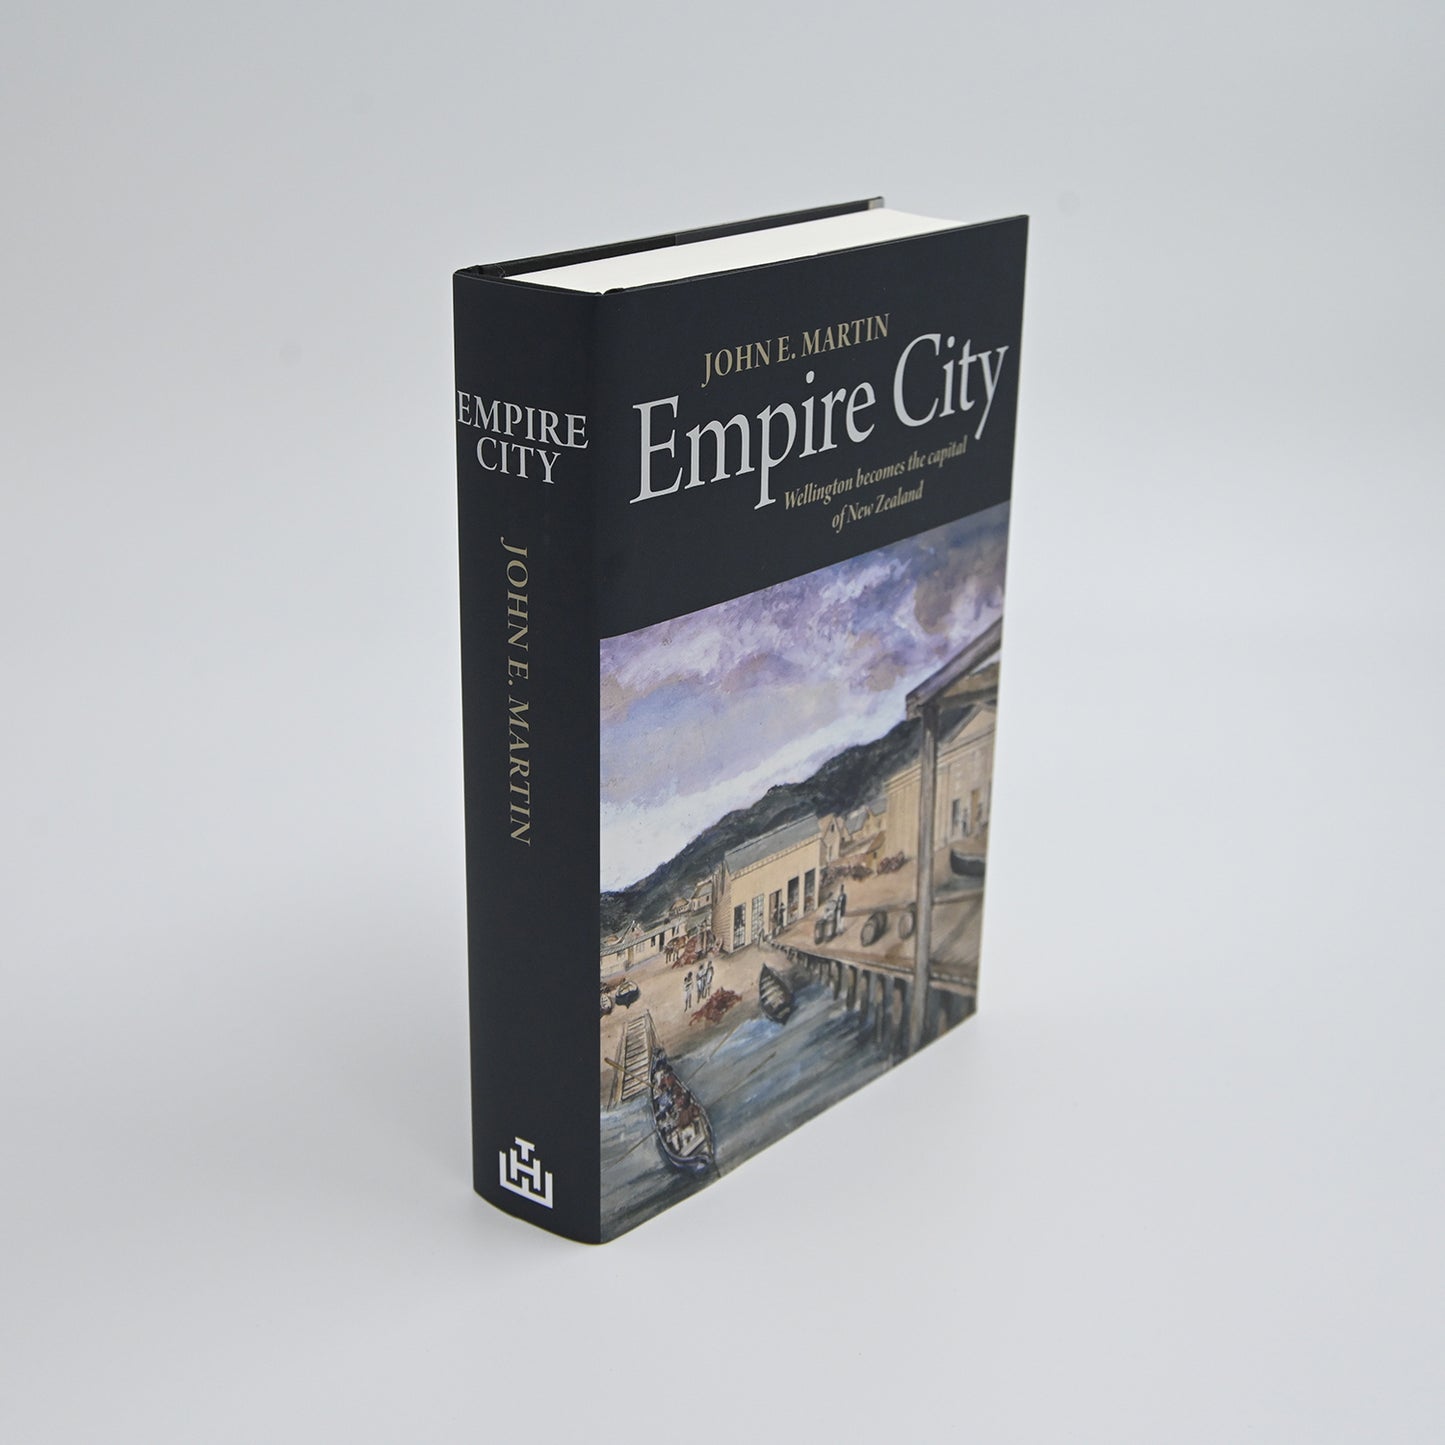 Empire City -John E. Martin